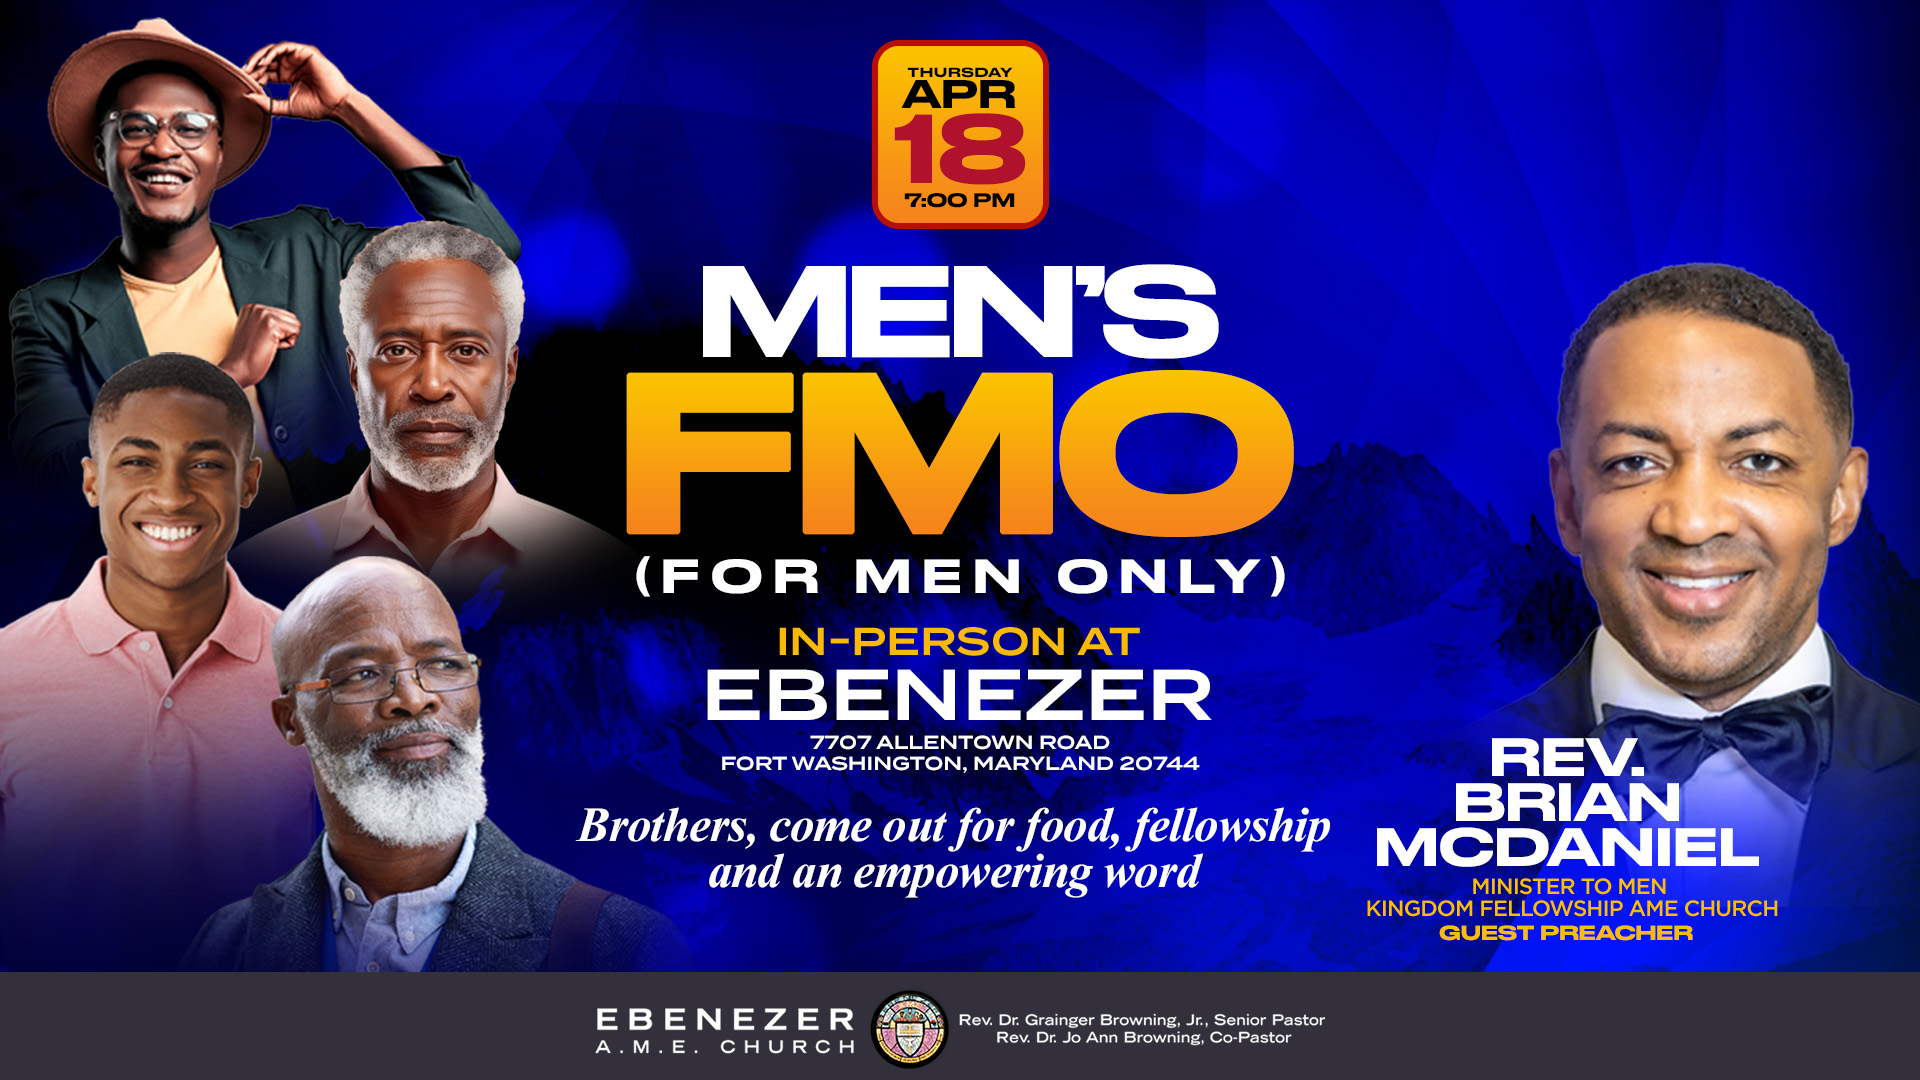 Men's FMO on April 18